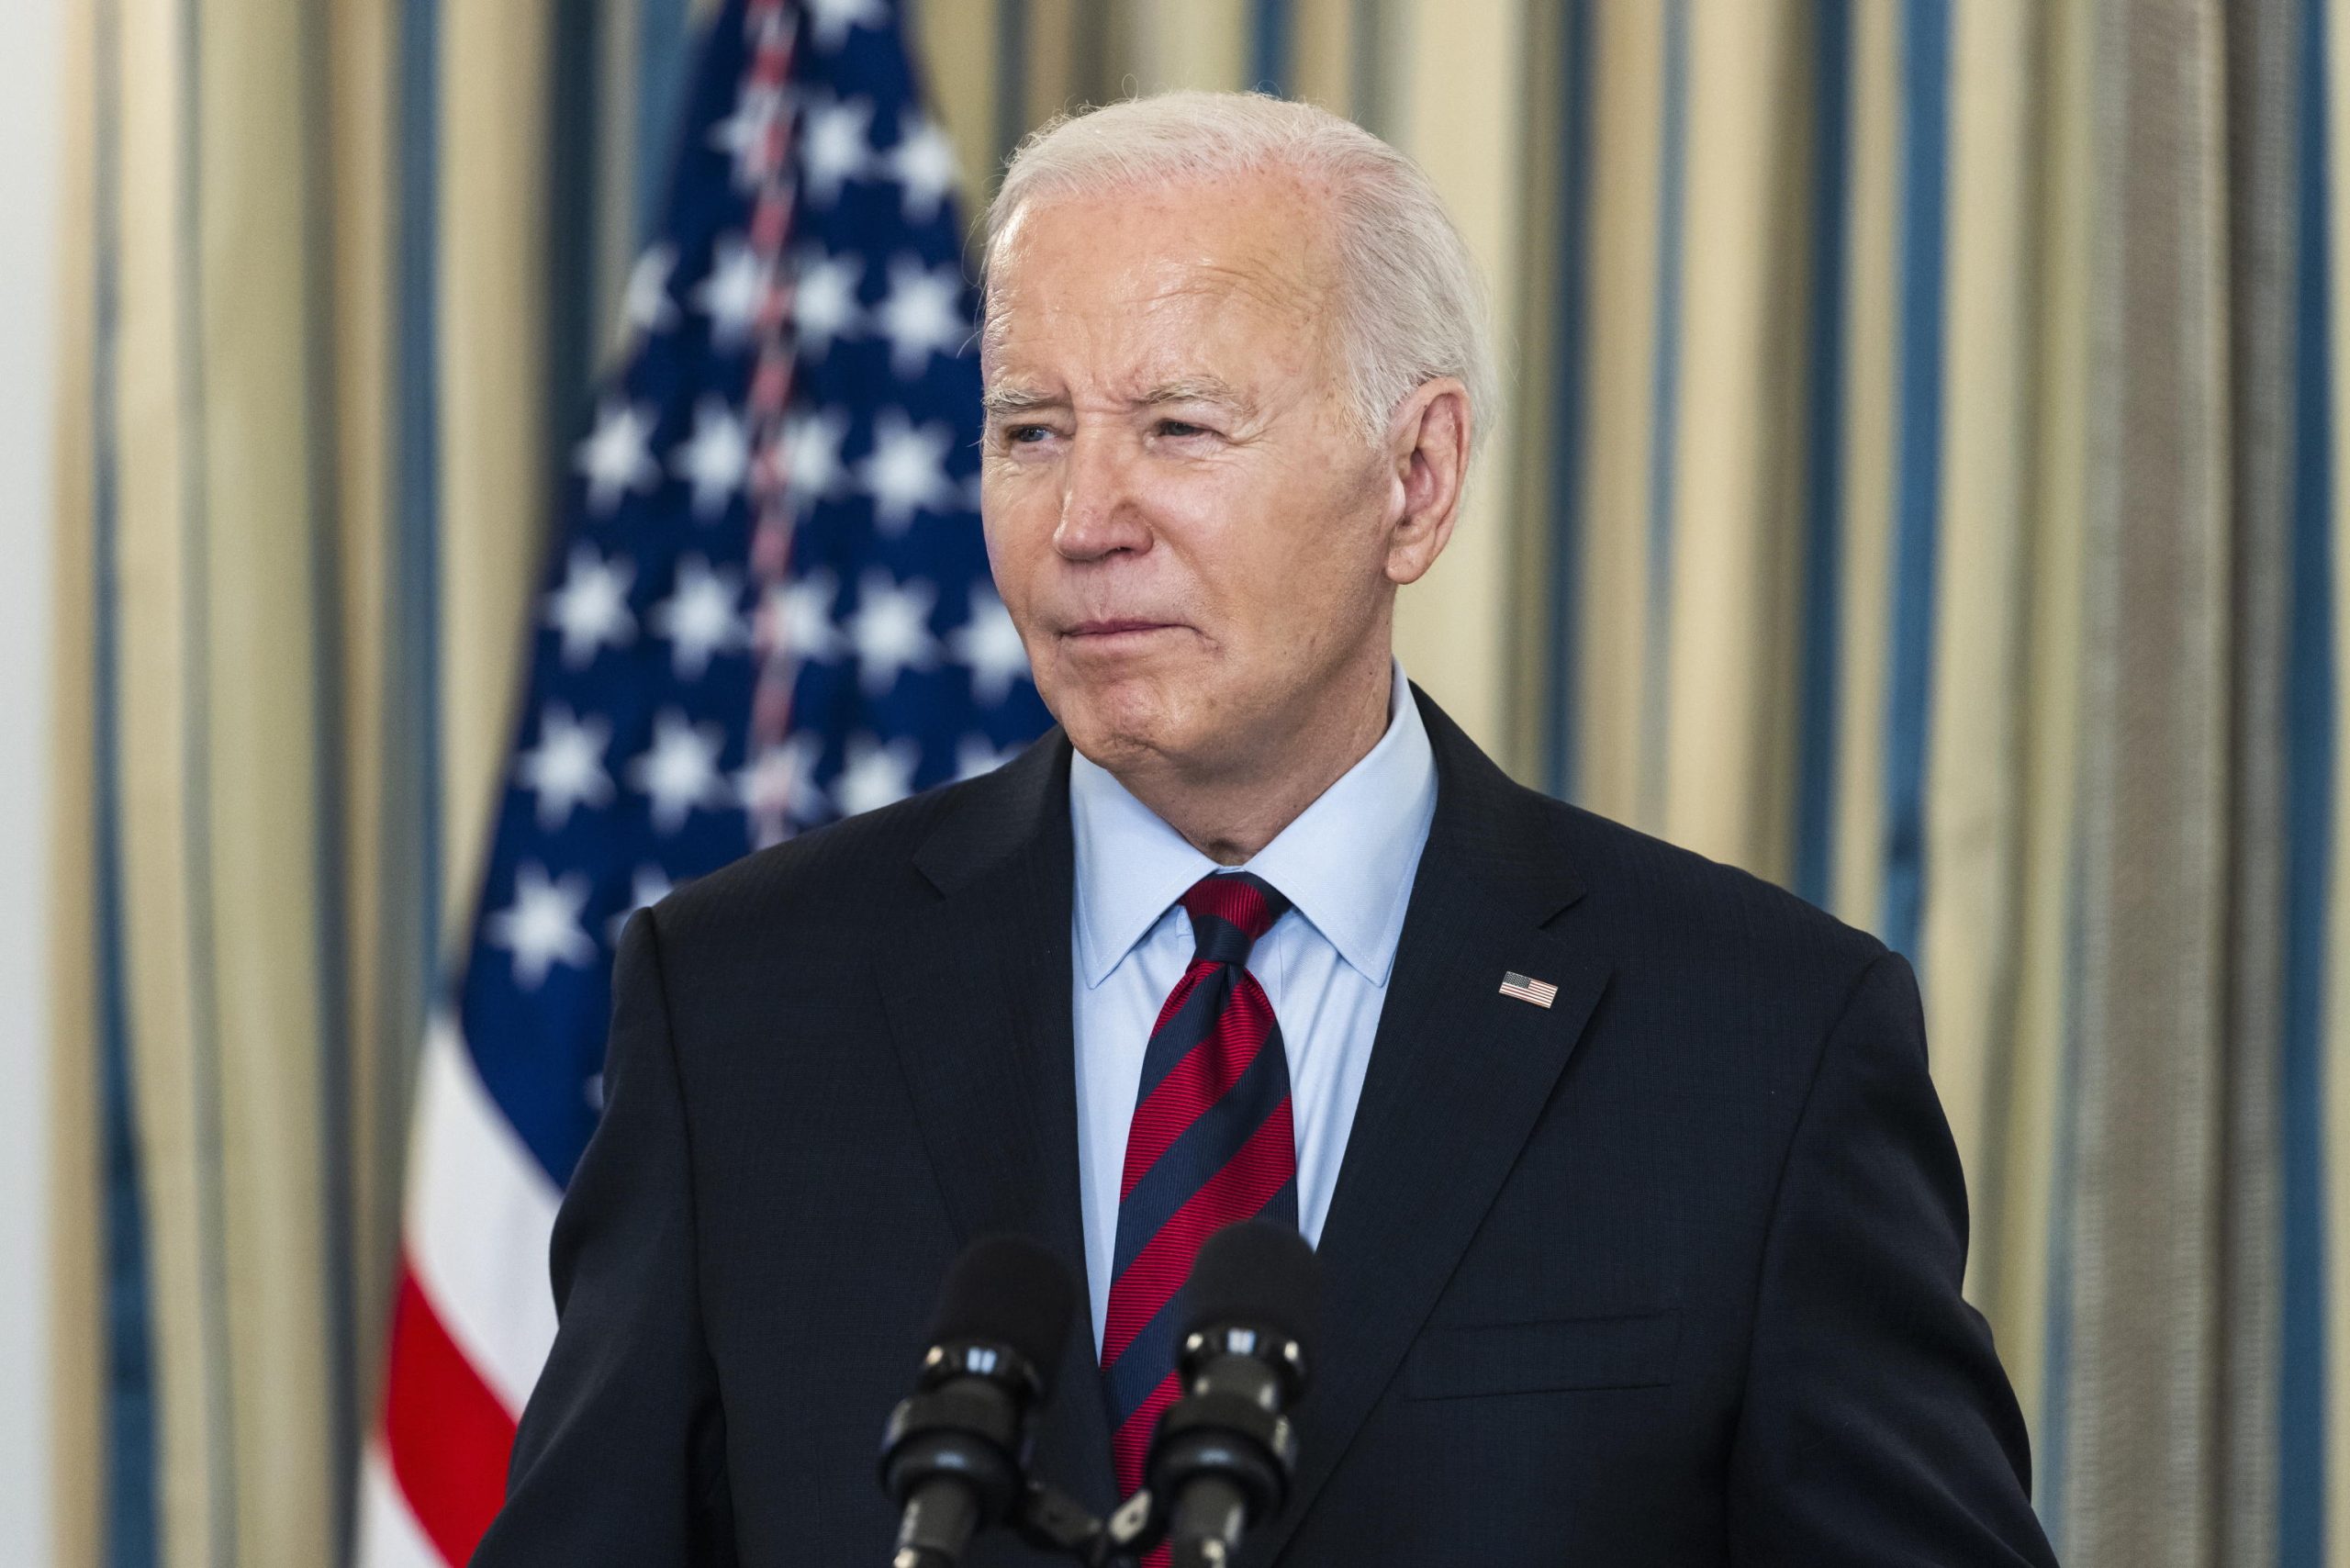 Il presidente uscente e candidato alle primarie democratiche Joe Biden